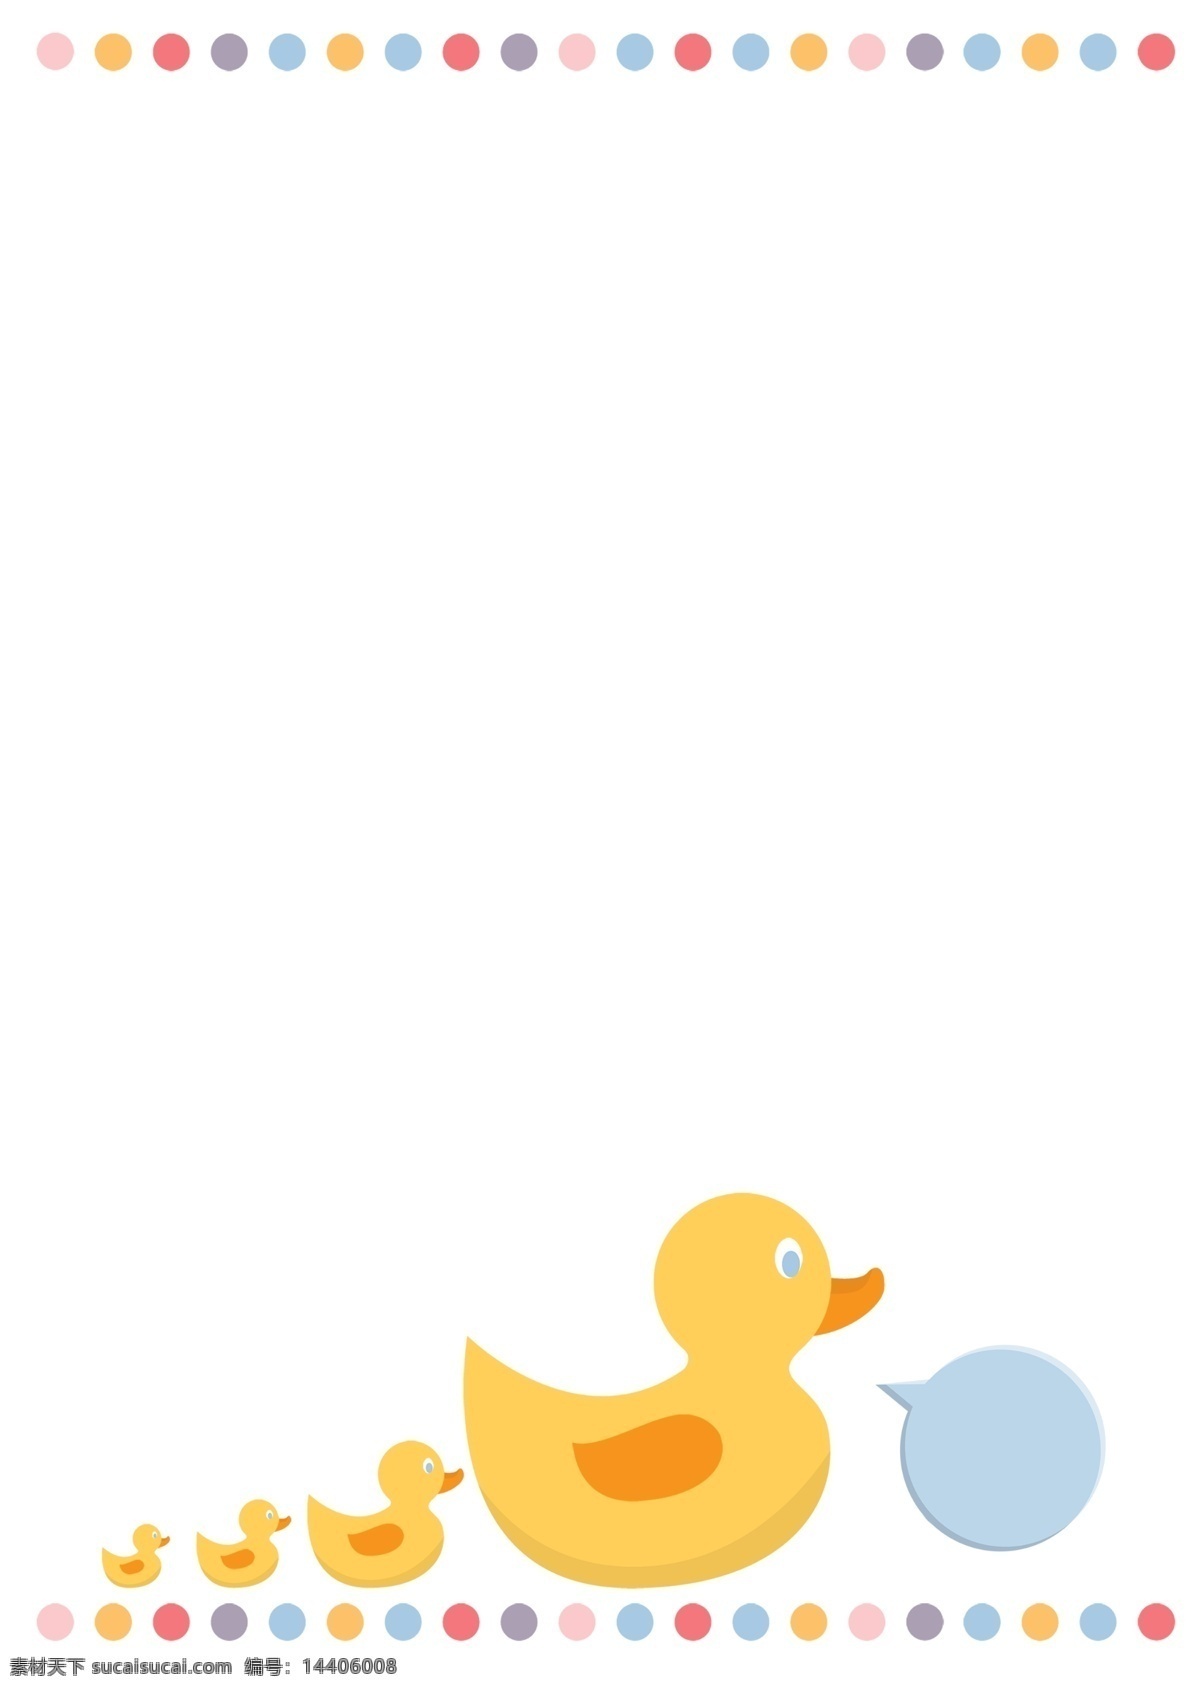 黄色 小 鸭子 边框 插画 黄色的小鸭子 立体边框 创意边框 手绘边框 卡通边框 唯美边框 动物边框